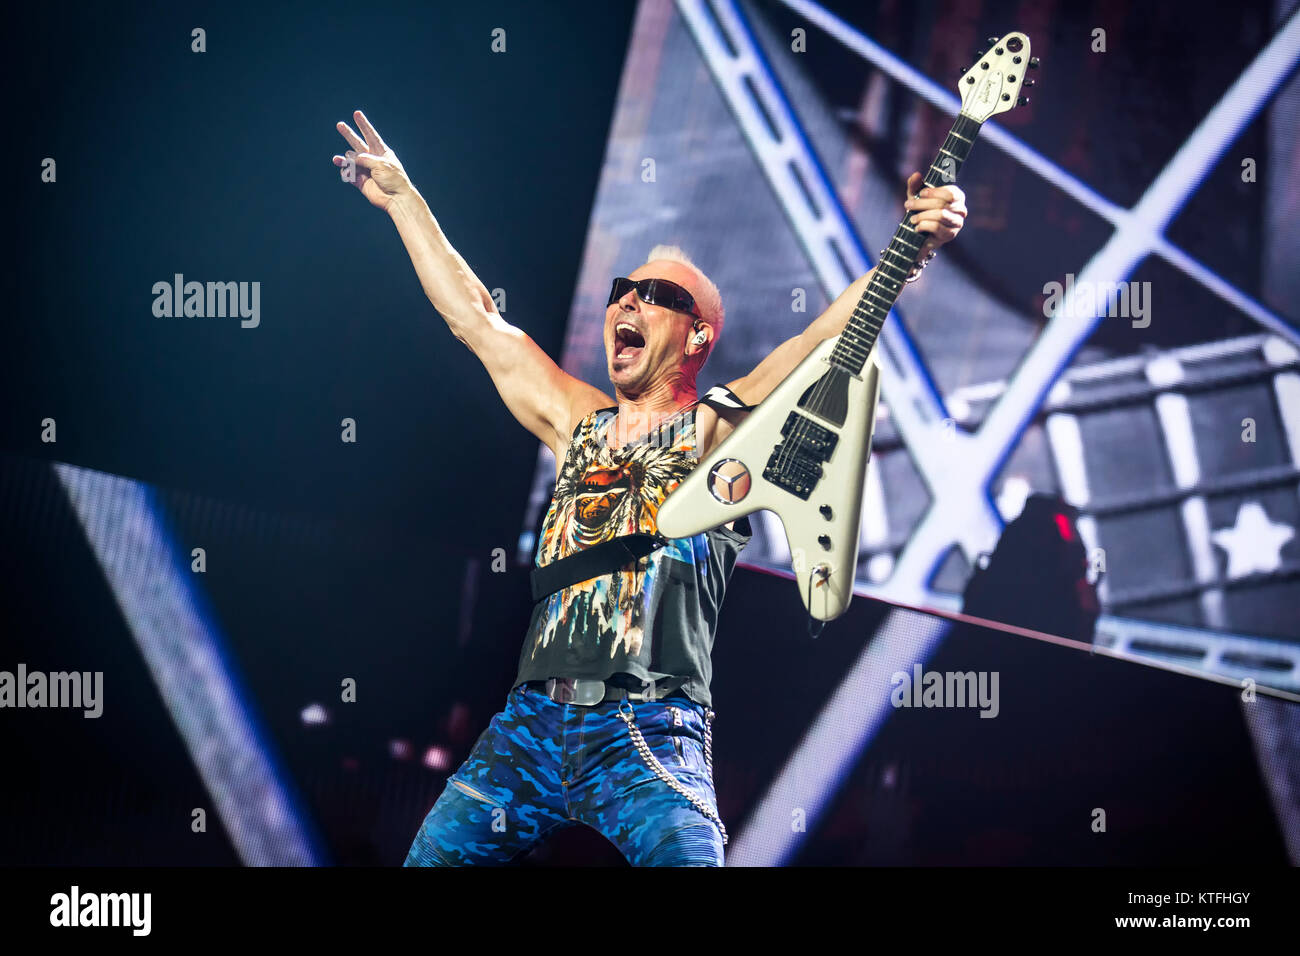 Norvegia, Oslo - Novembre 22, 2017. L'della rock band tedesca Scorpions esegue un concerto dal vivo a Oslo Spektrum. Qui il chitarrista Rudolf Schenker è visto dal vivo sul palco. (Photo credit: Gonzales foto - Terje Dokken). Foto Stock